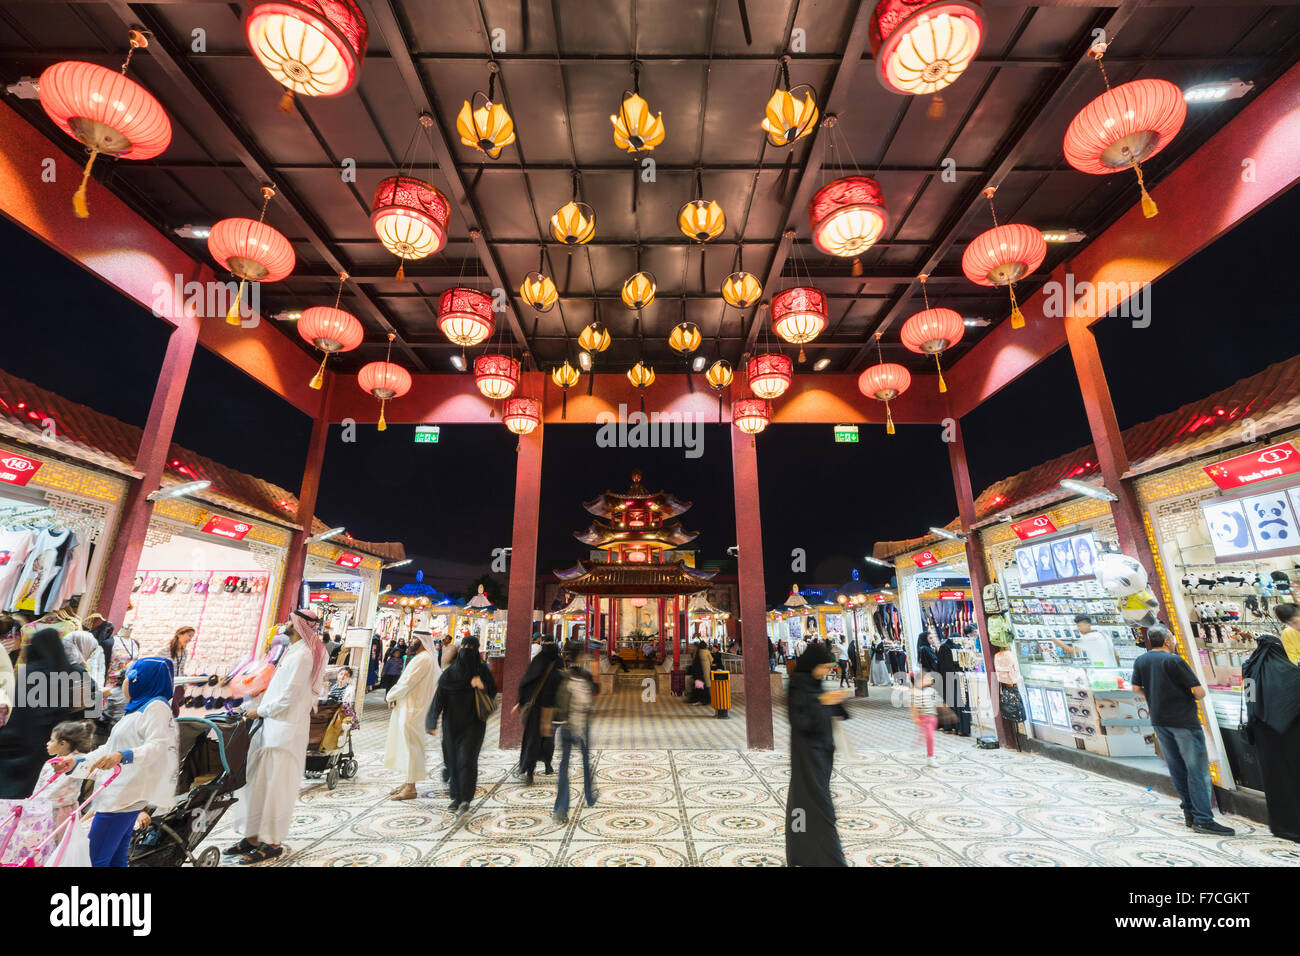 Pavillon de la Chine illuminée la nuit au Village Mondial 2015 à Dubaï Émirats Arabes Unis Banque D'Images